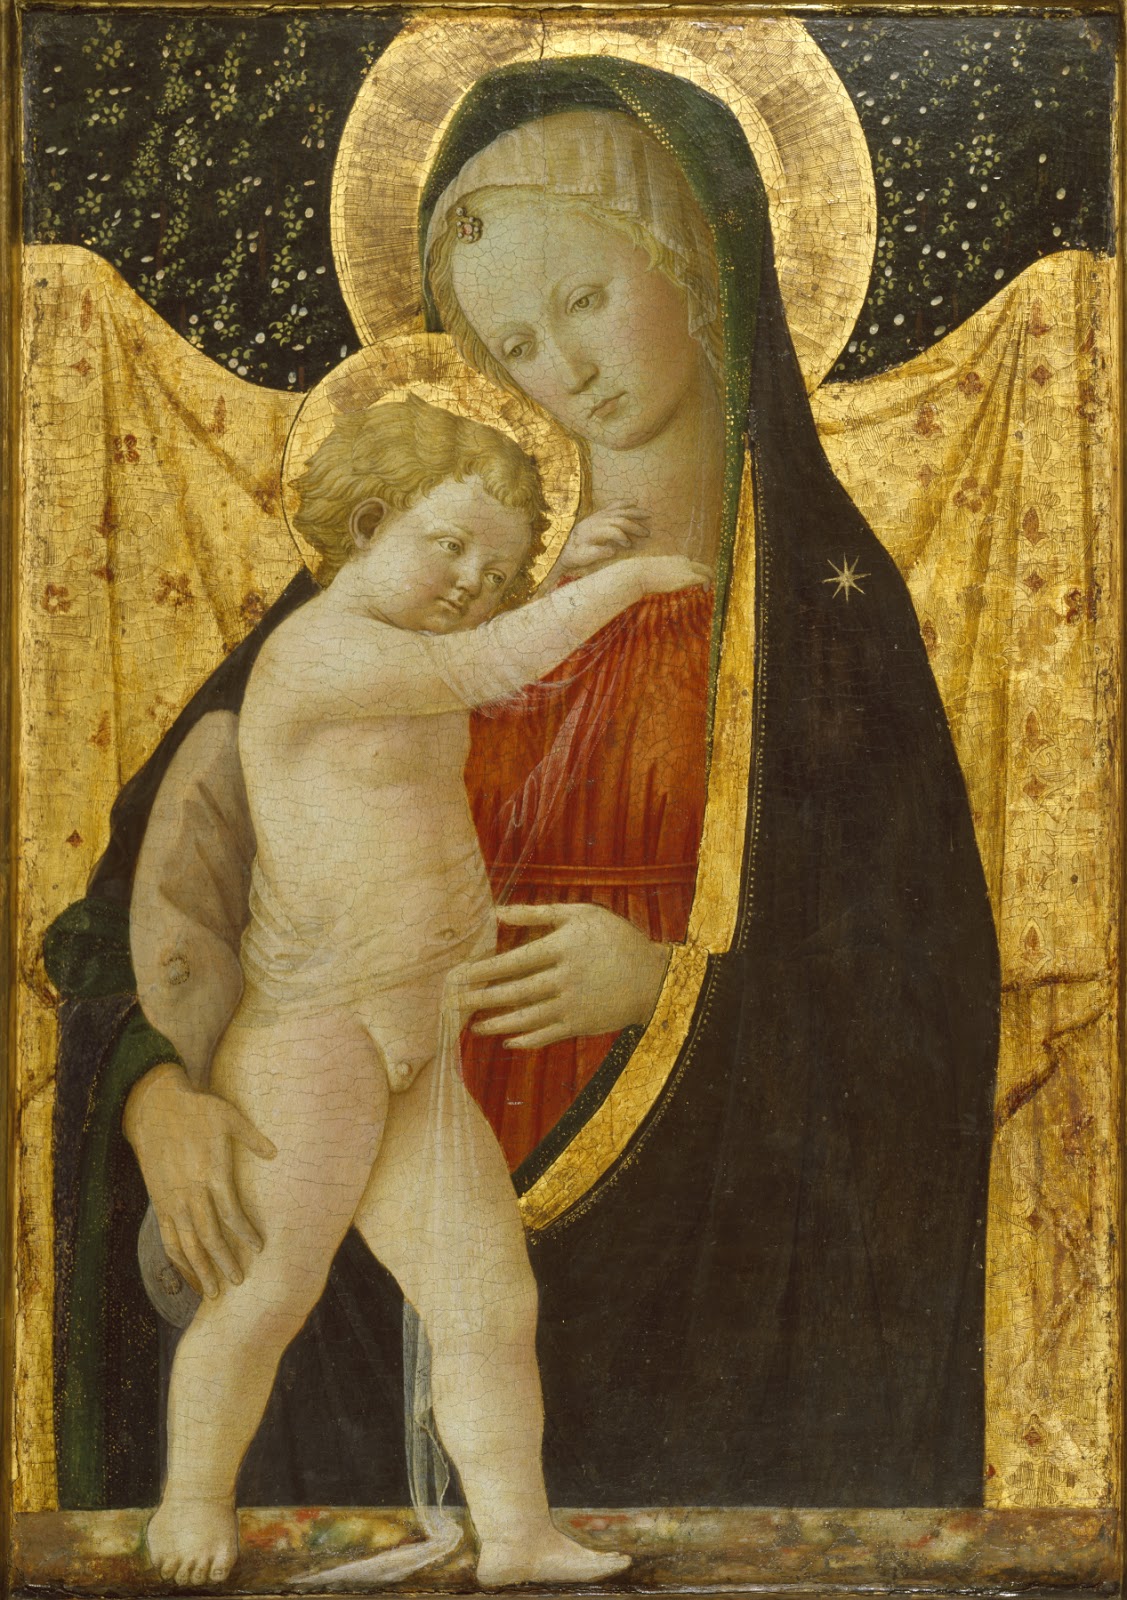 Filippino+Lippi-1457-1504 (123).jpg